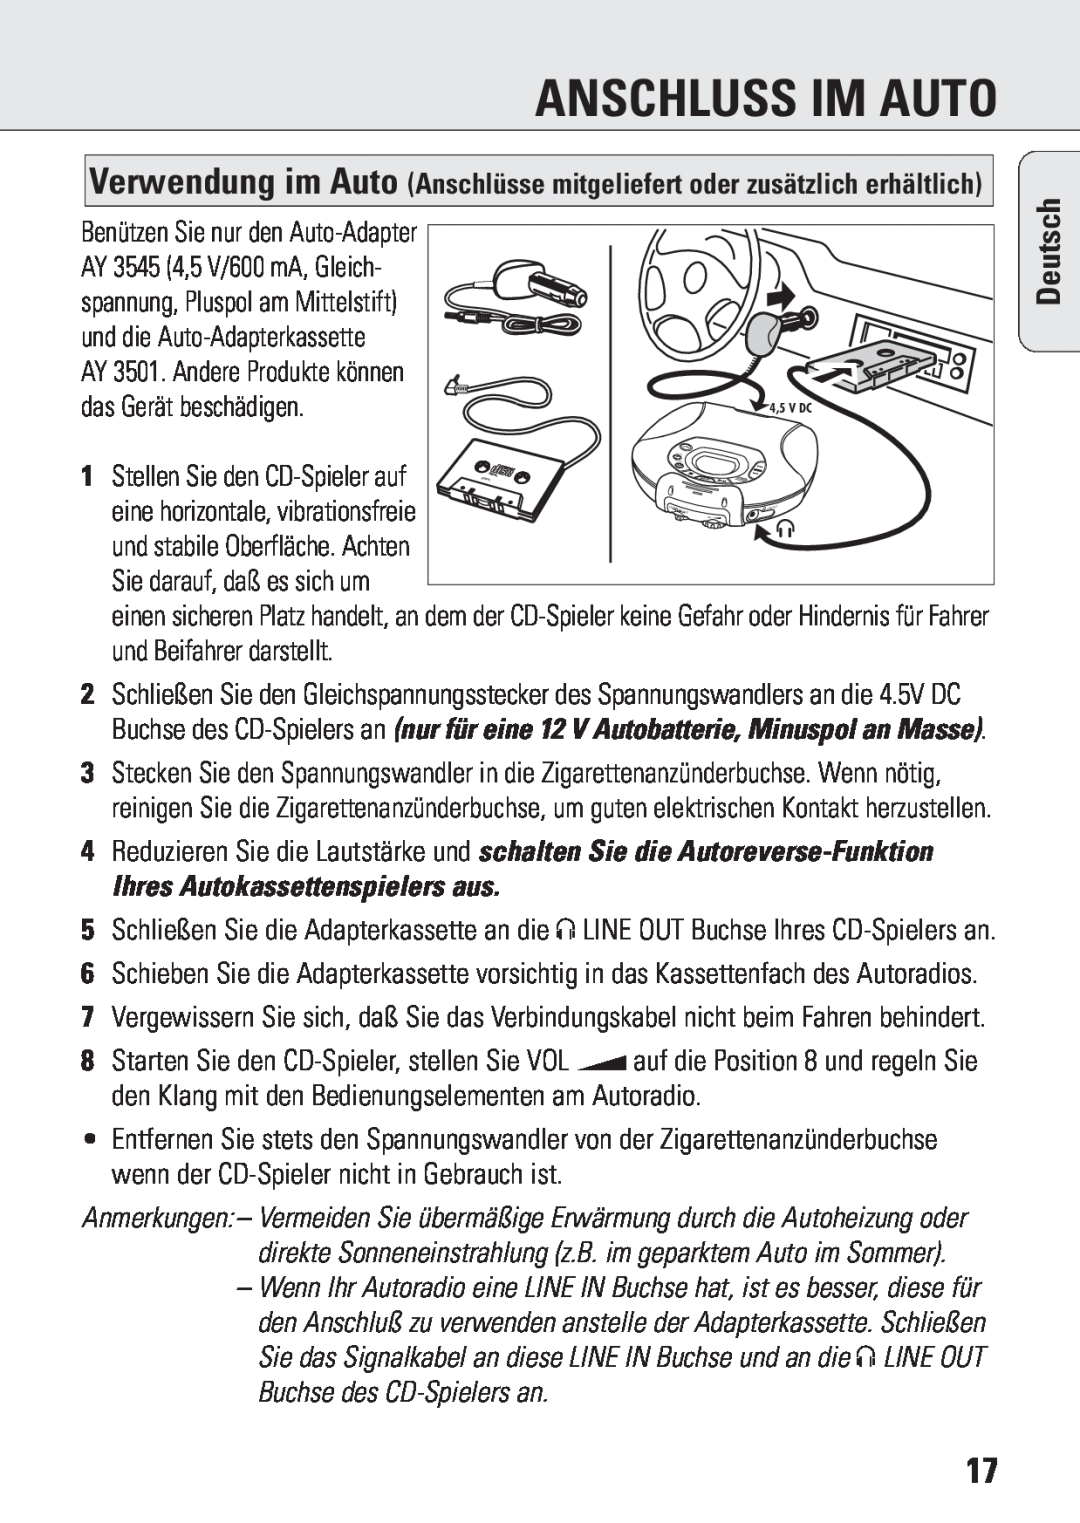 Philips ACT 7583 manual Anschluss Im Auto, Ihres Autokassettenspielers aus, Deutsch 